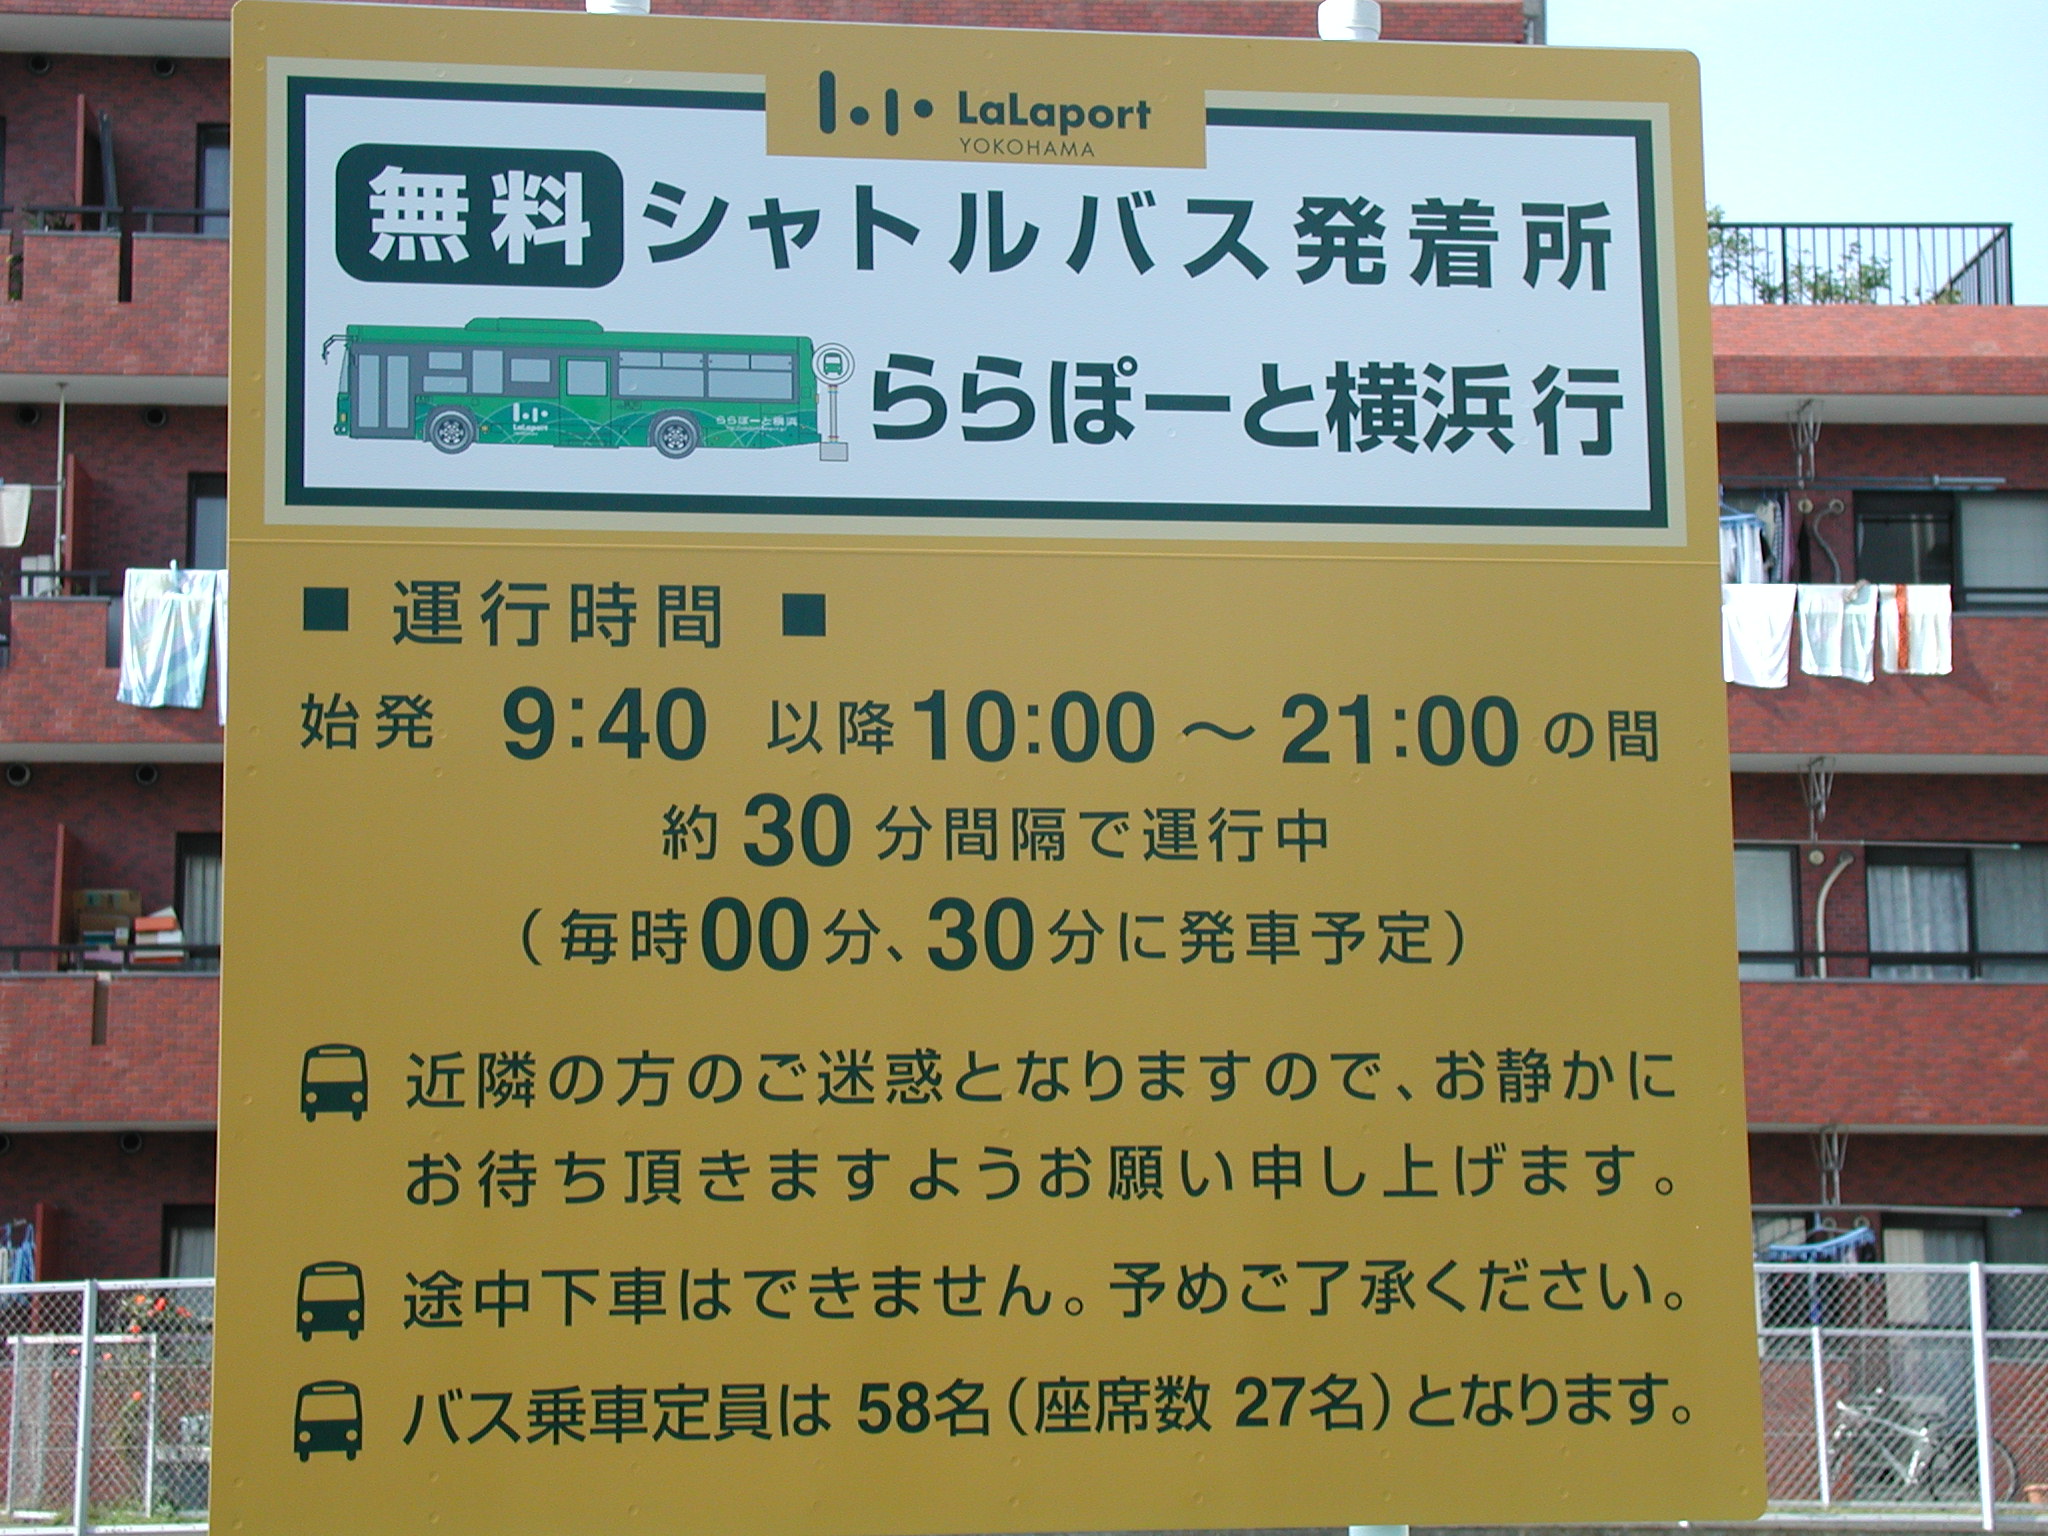 鴨居駅よりららぽーと横浜への送迎バス 三枝商事のスタッフブログ